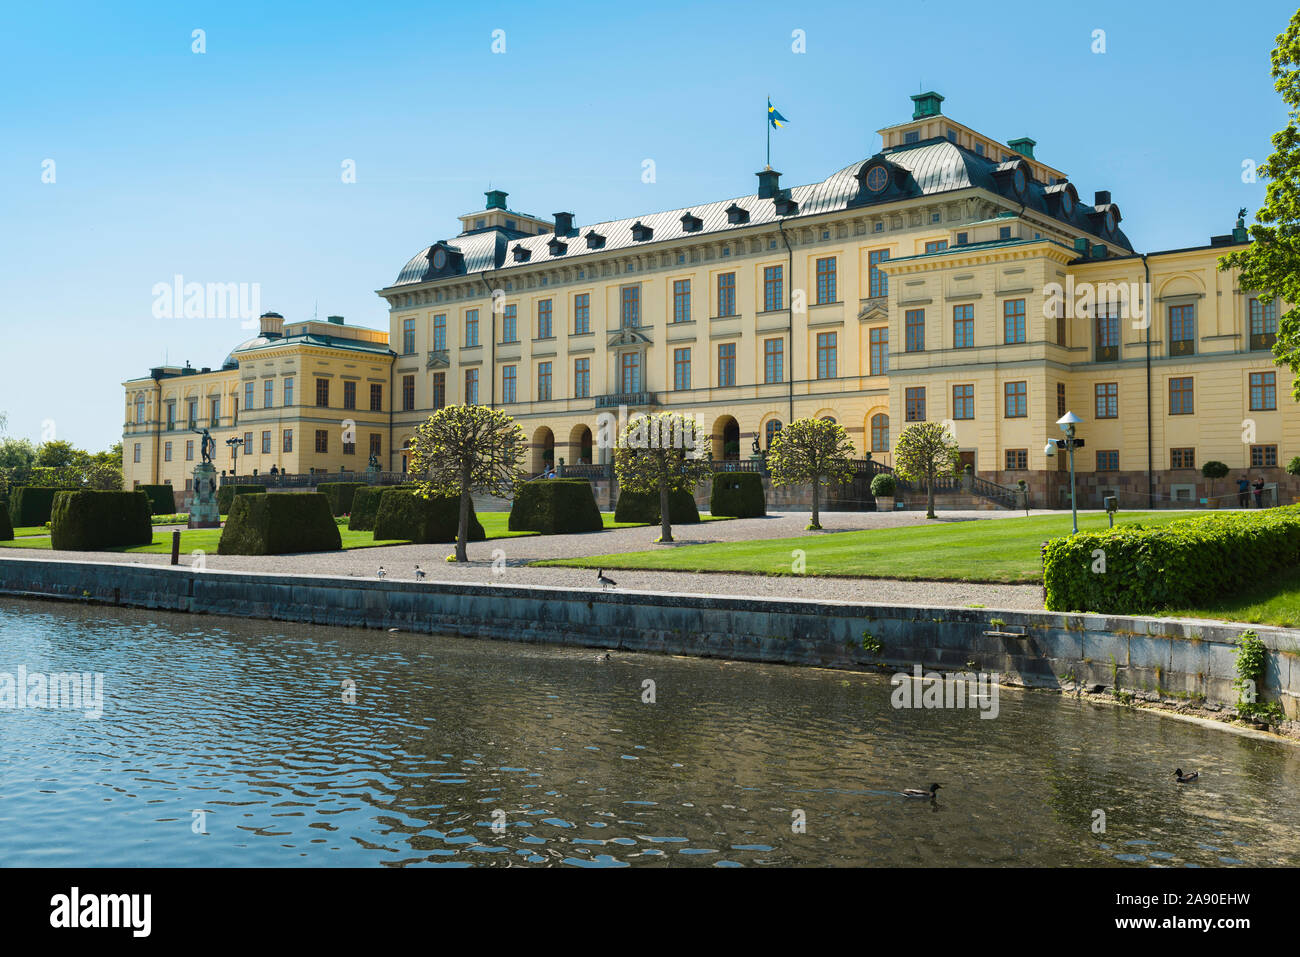 In Svezia il Palazzo di Drottningholm, vista in estate del fronte orientale del Palazzo di Drottningholm con il lago Malaren in primo piano, Lovön isola, Svezia. Foto Stock